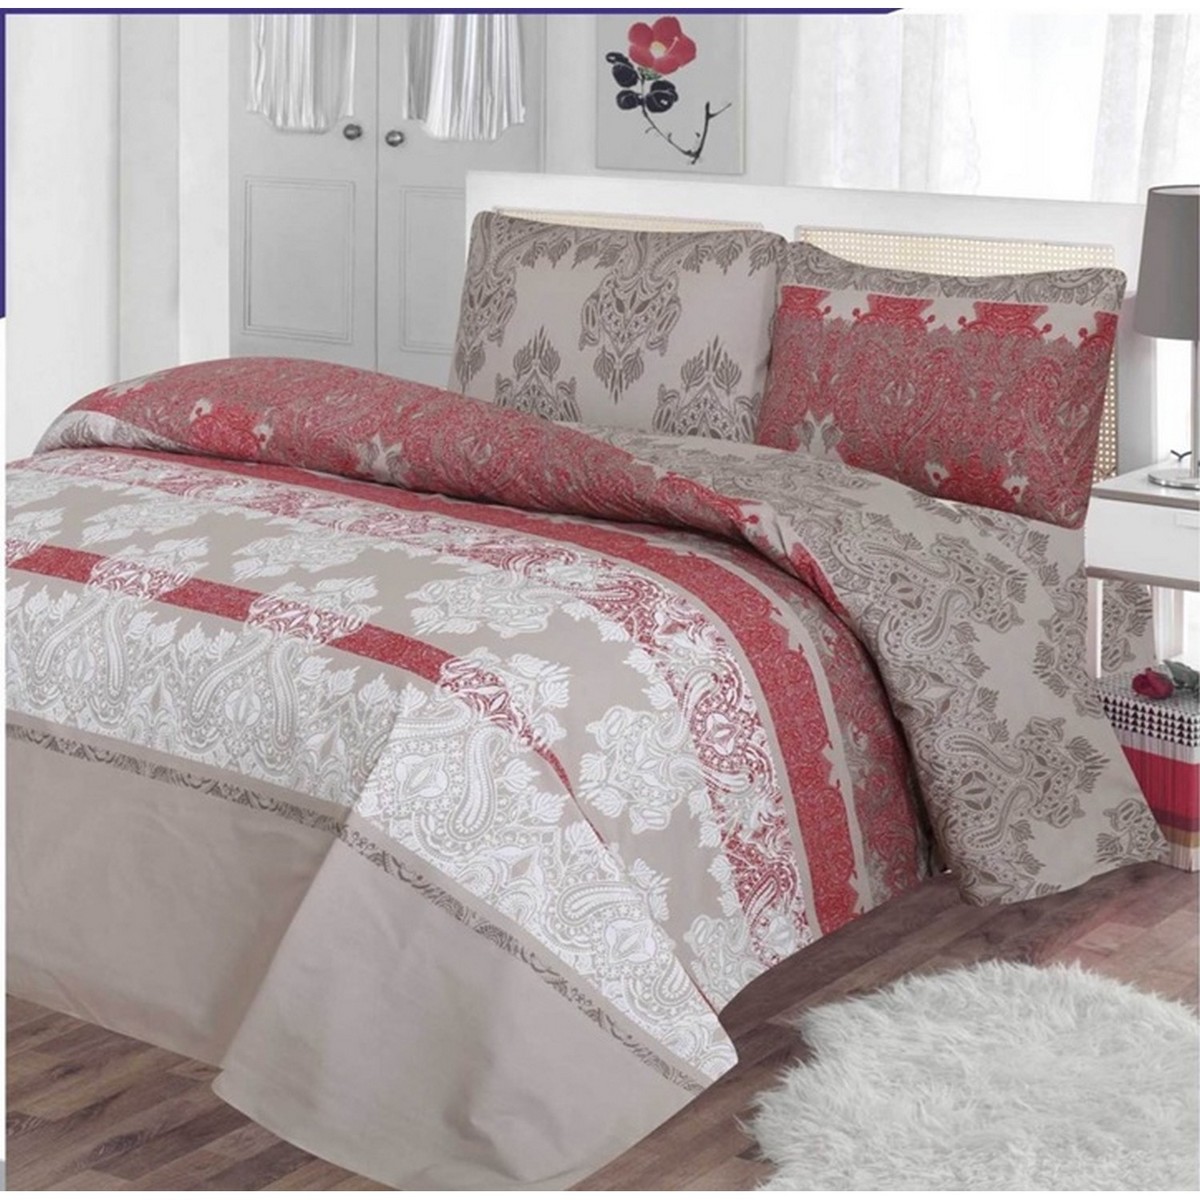 Austir Comforter Queen 3pcs Set 220X240cm Purity